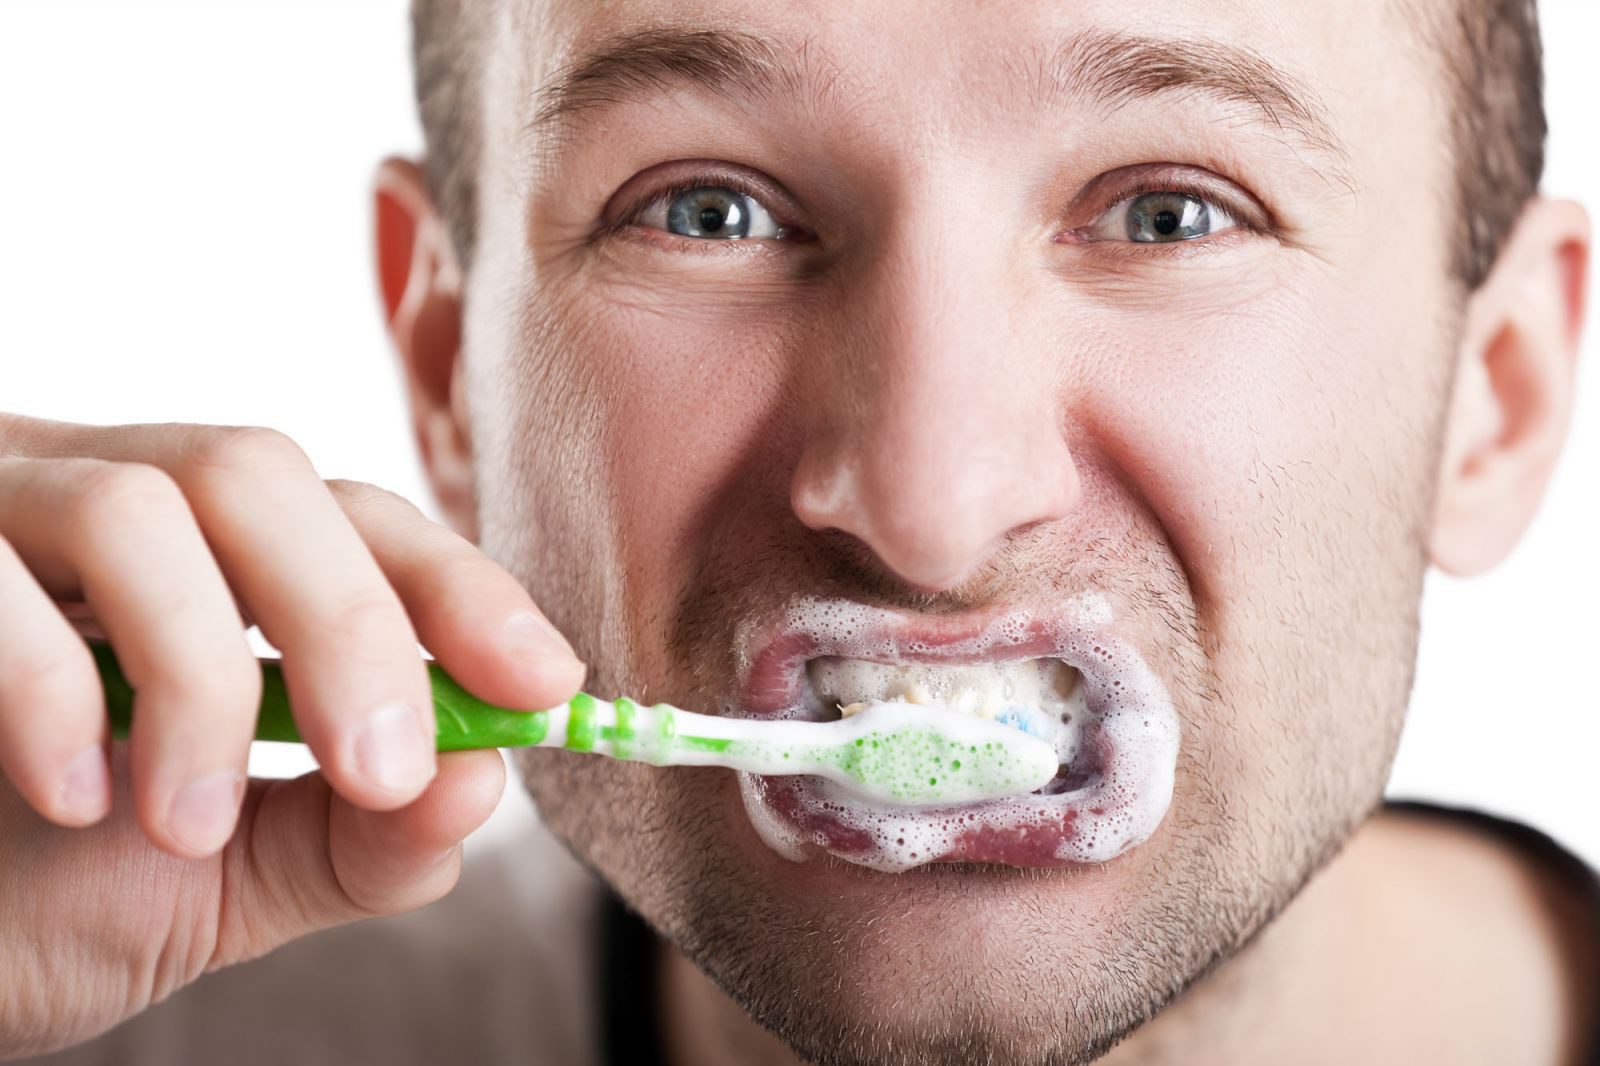 Đánh răng nhiều có tốt không? Câu trả lời là không